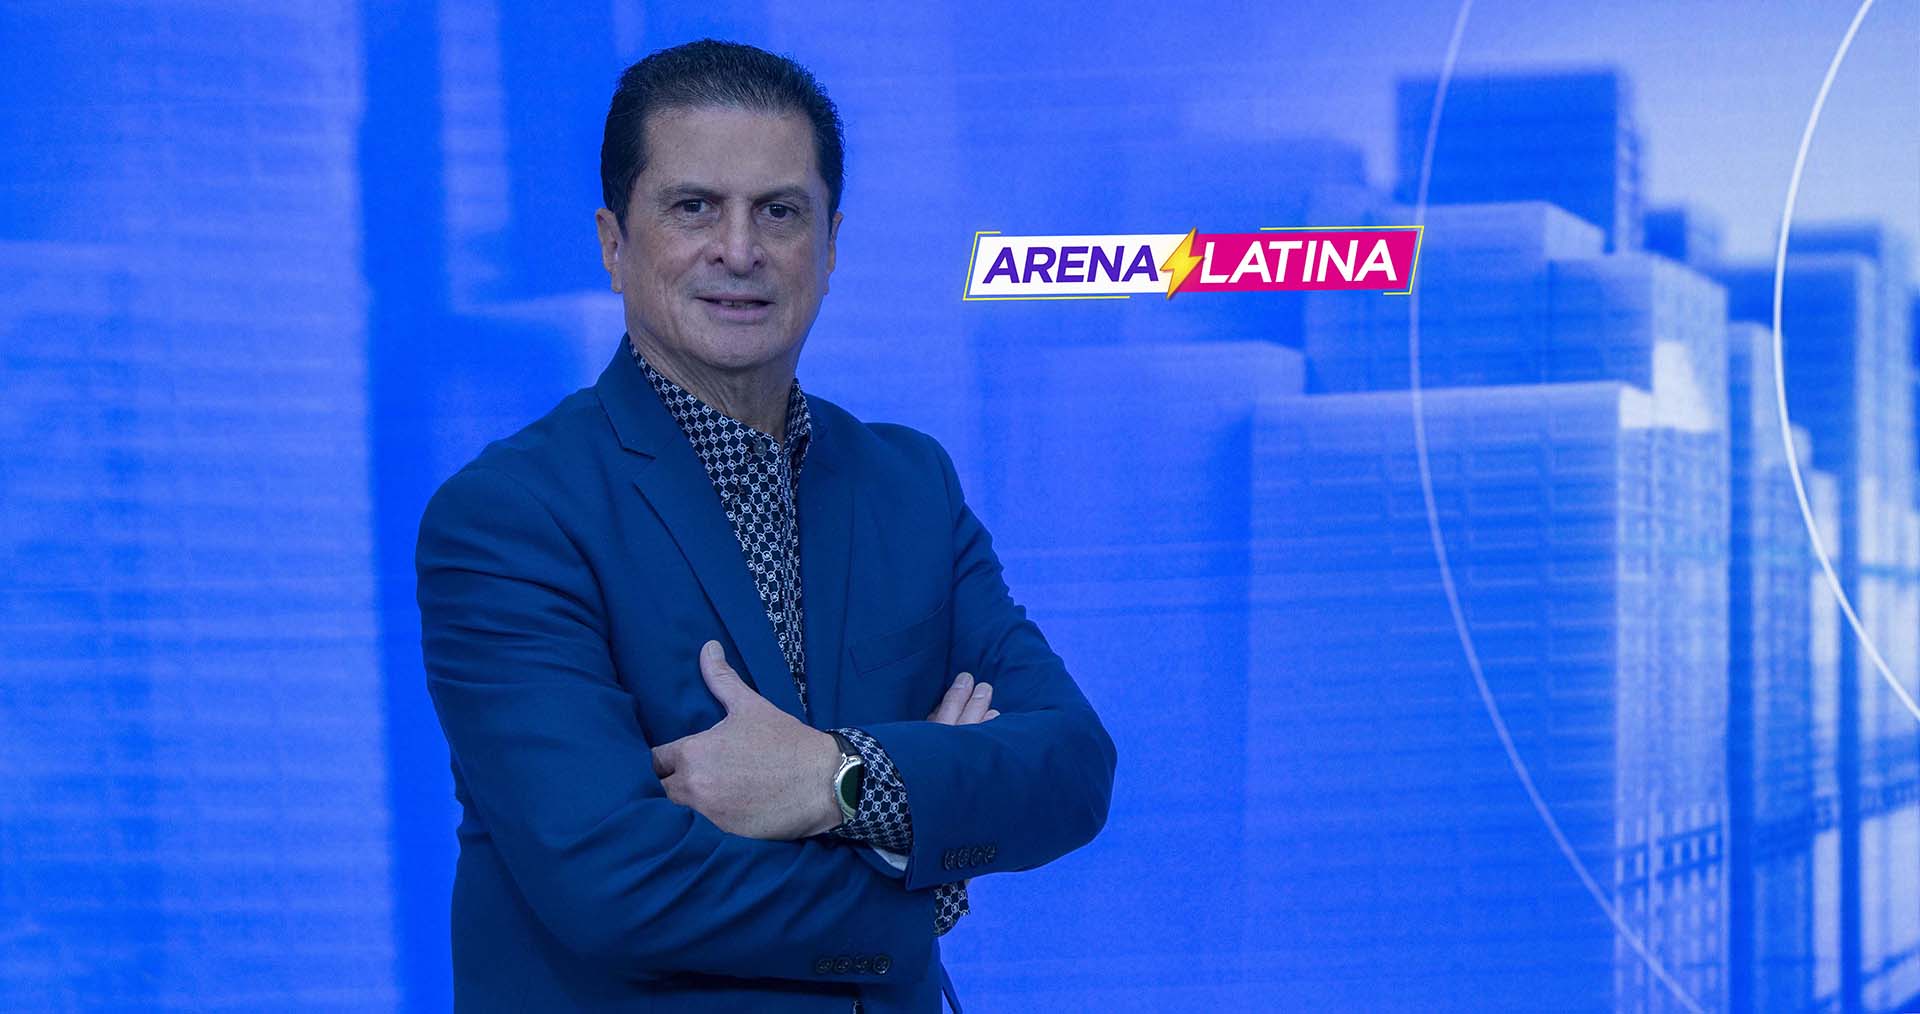 Al día con los deportes en Visión Latina TV2 min read